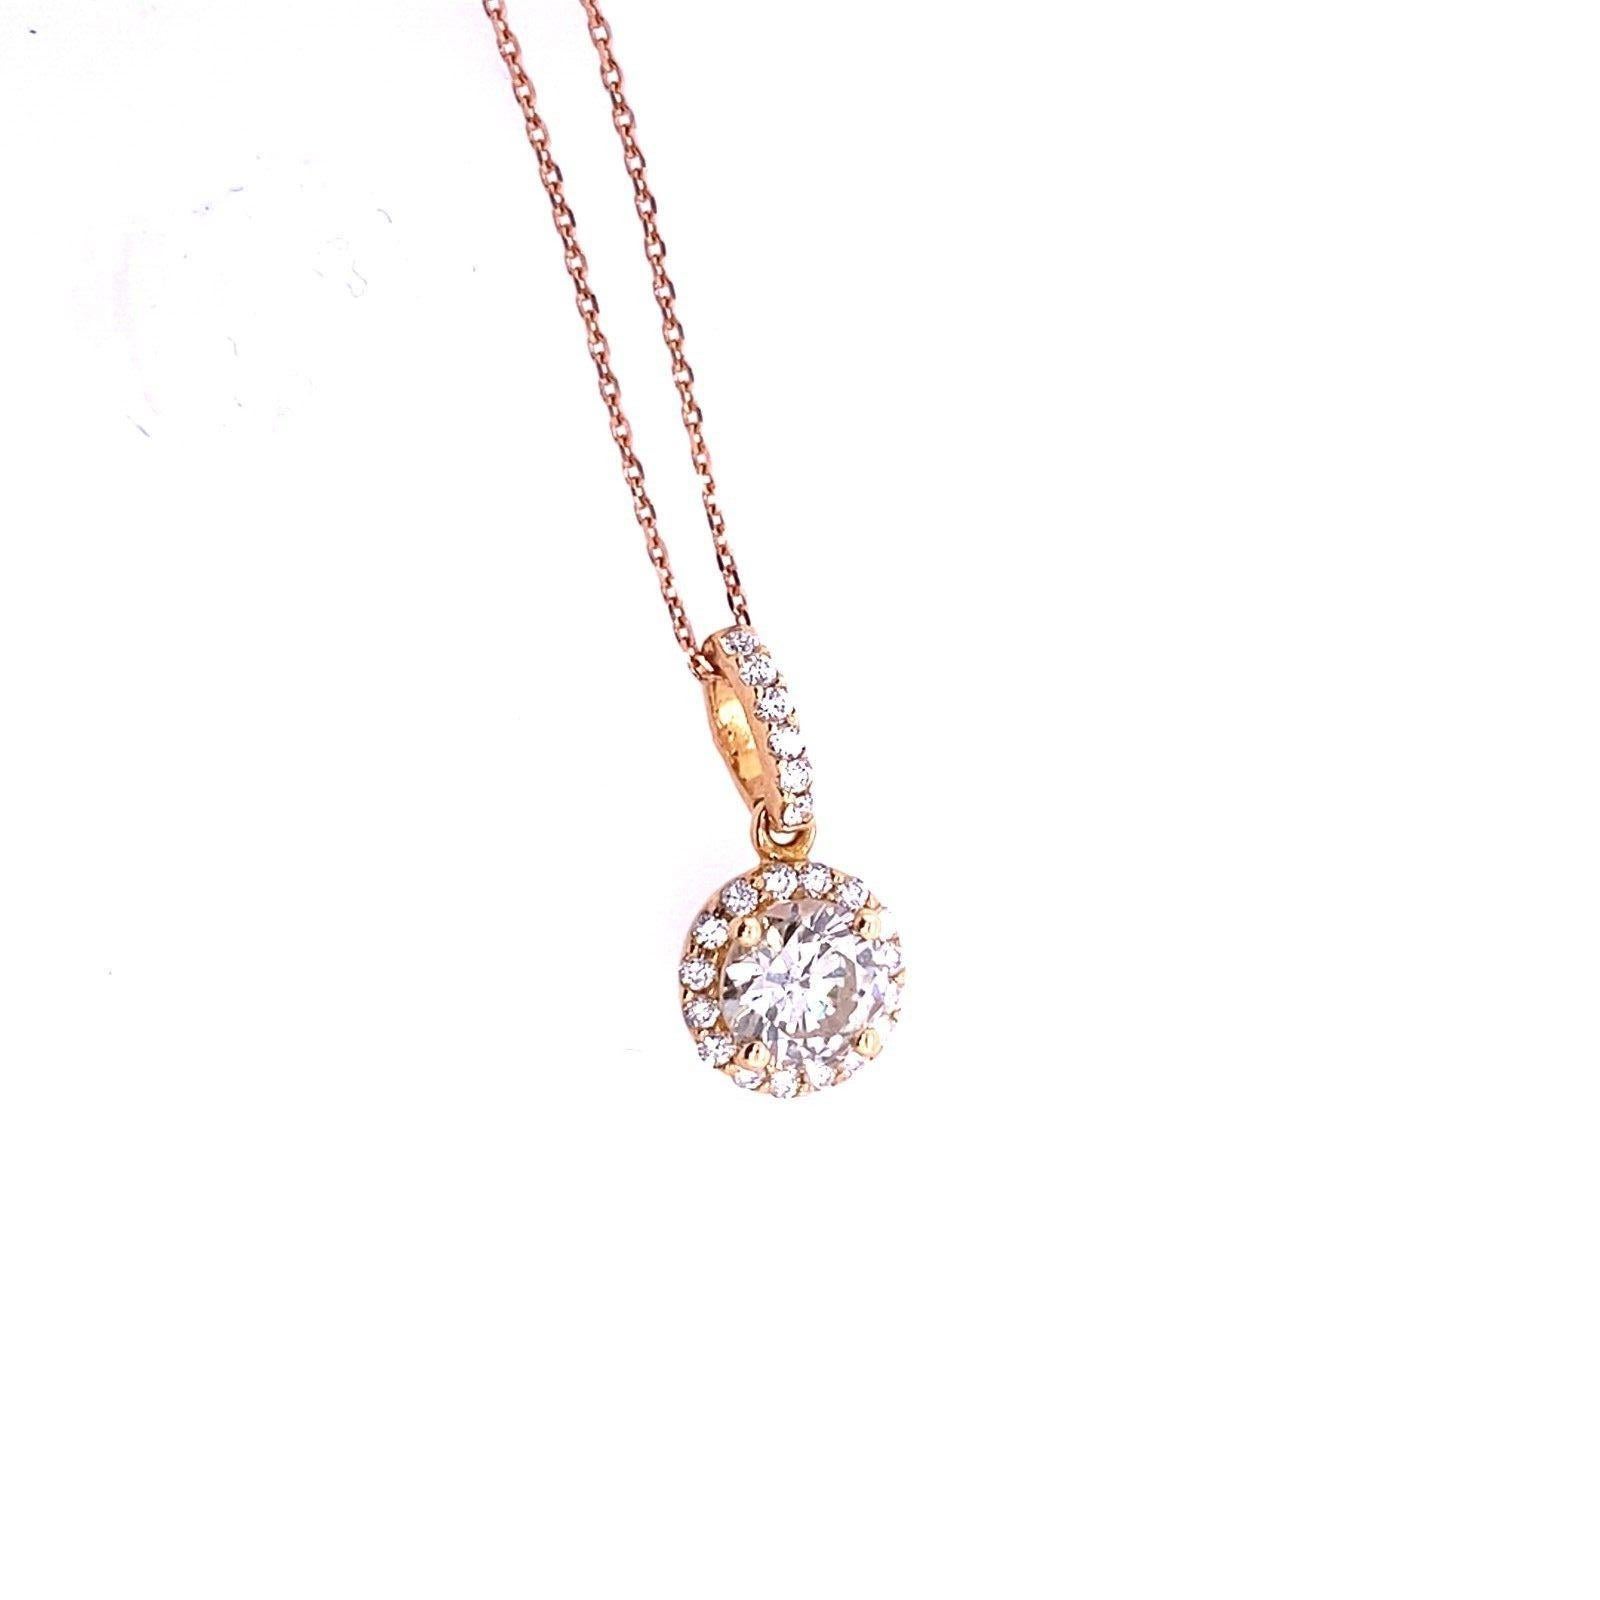 Hochwertiger Diamantanhänger mit rundem Brillantschliff (0,75ct) in 18ct Rose Gold

Dieser 0,75-karätige Diamantanhänger aus 18-karätigem Roségold hat ein einzigartiges und elegantes Design. Der Diamantanhänger ist mit einem Diamant-Halo versehen,